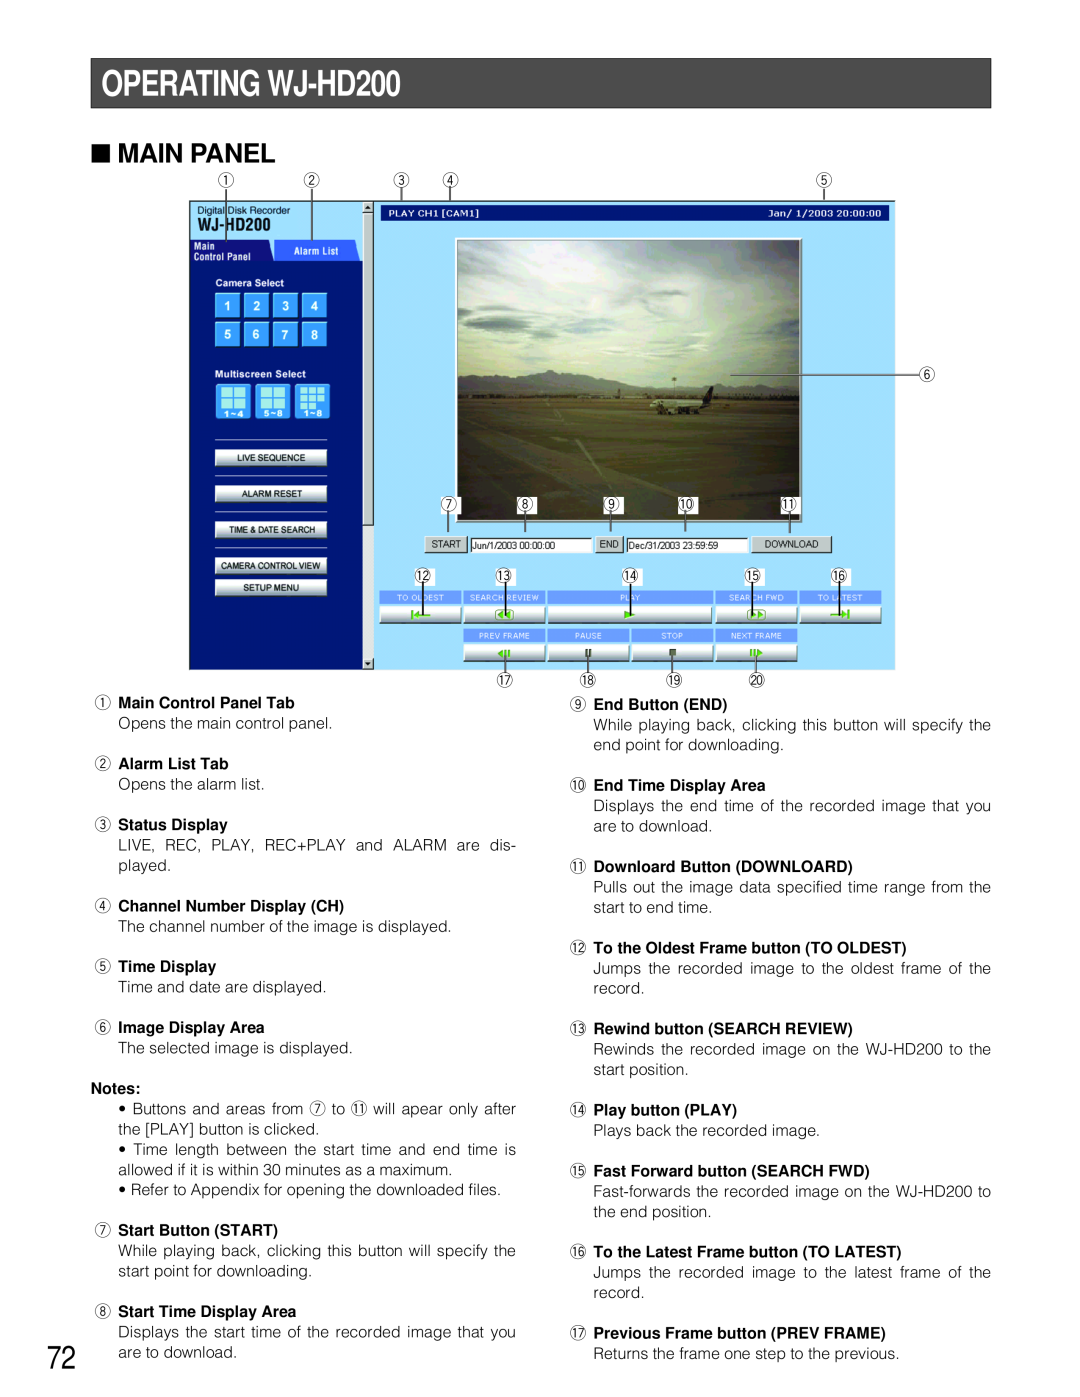 Panasonic manual OPERATING WJ-HD200, Main Panel 